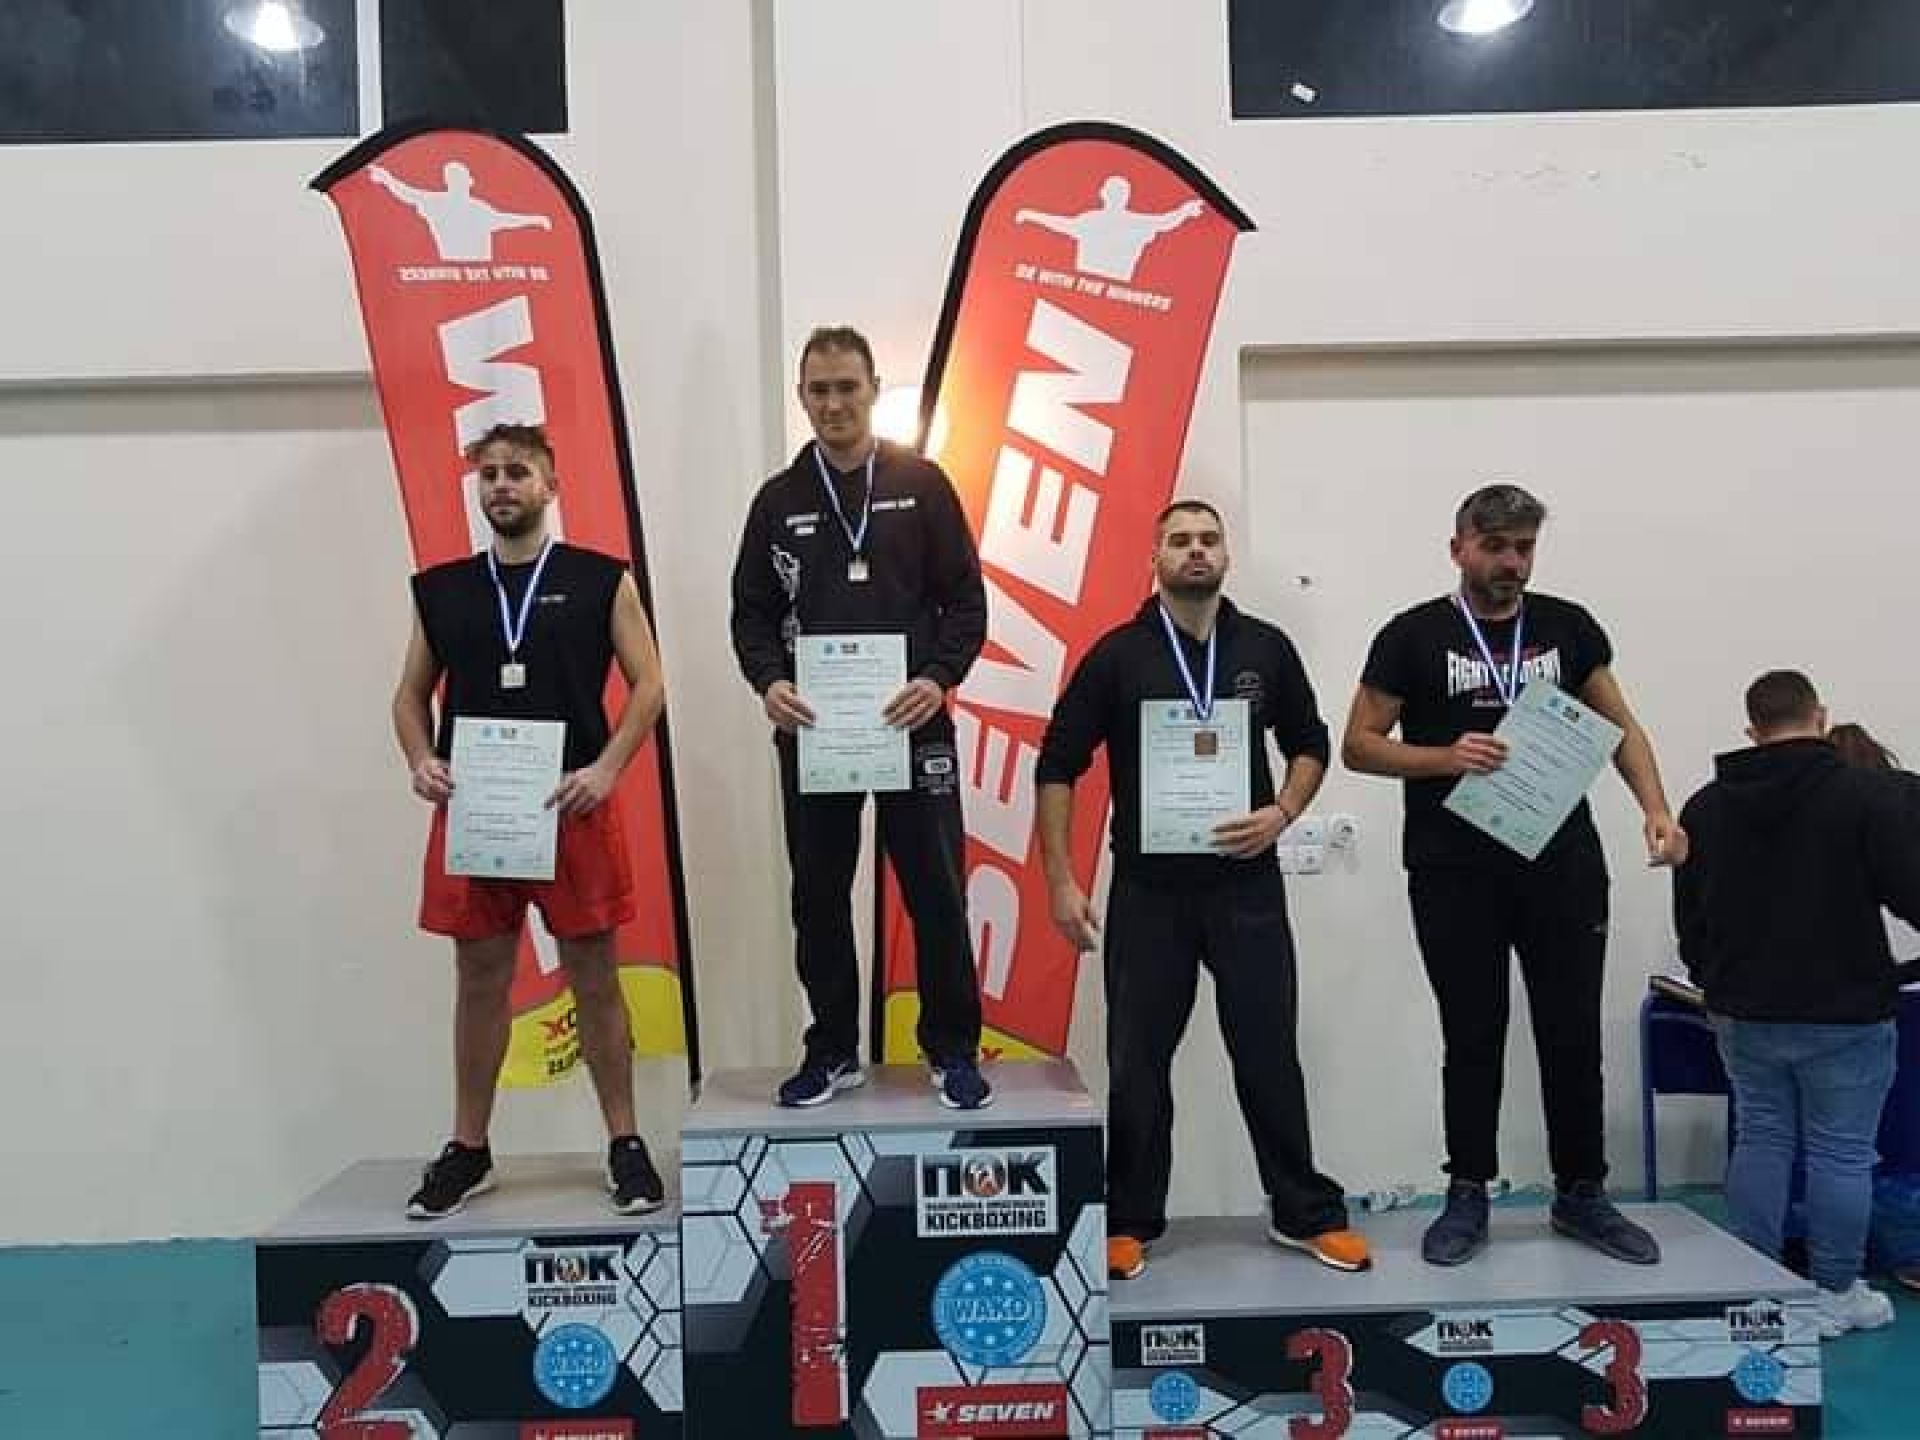 2 Χρυσά, 2 Ασημένια και 1 Χάλκινο για τον Α.Σ Σύρου στο Πανελλήνιο Πρωτάθλημα Kickboxing